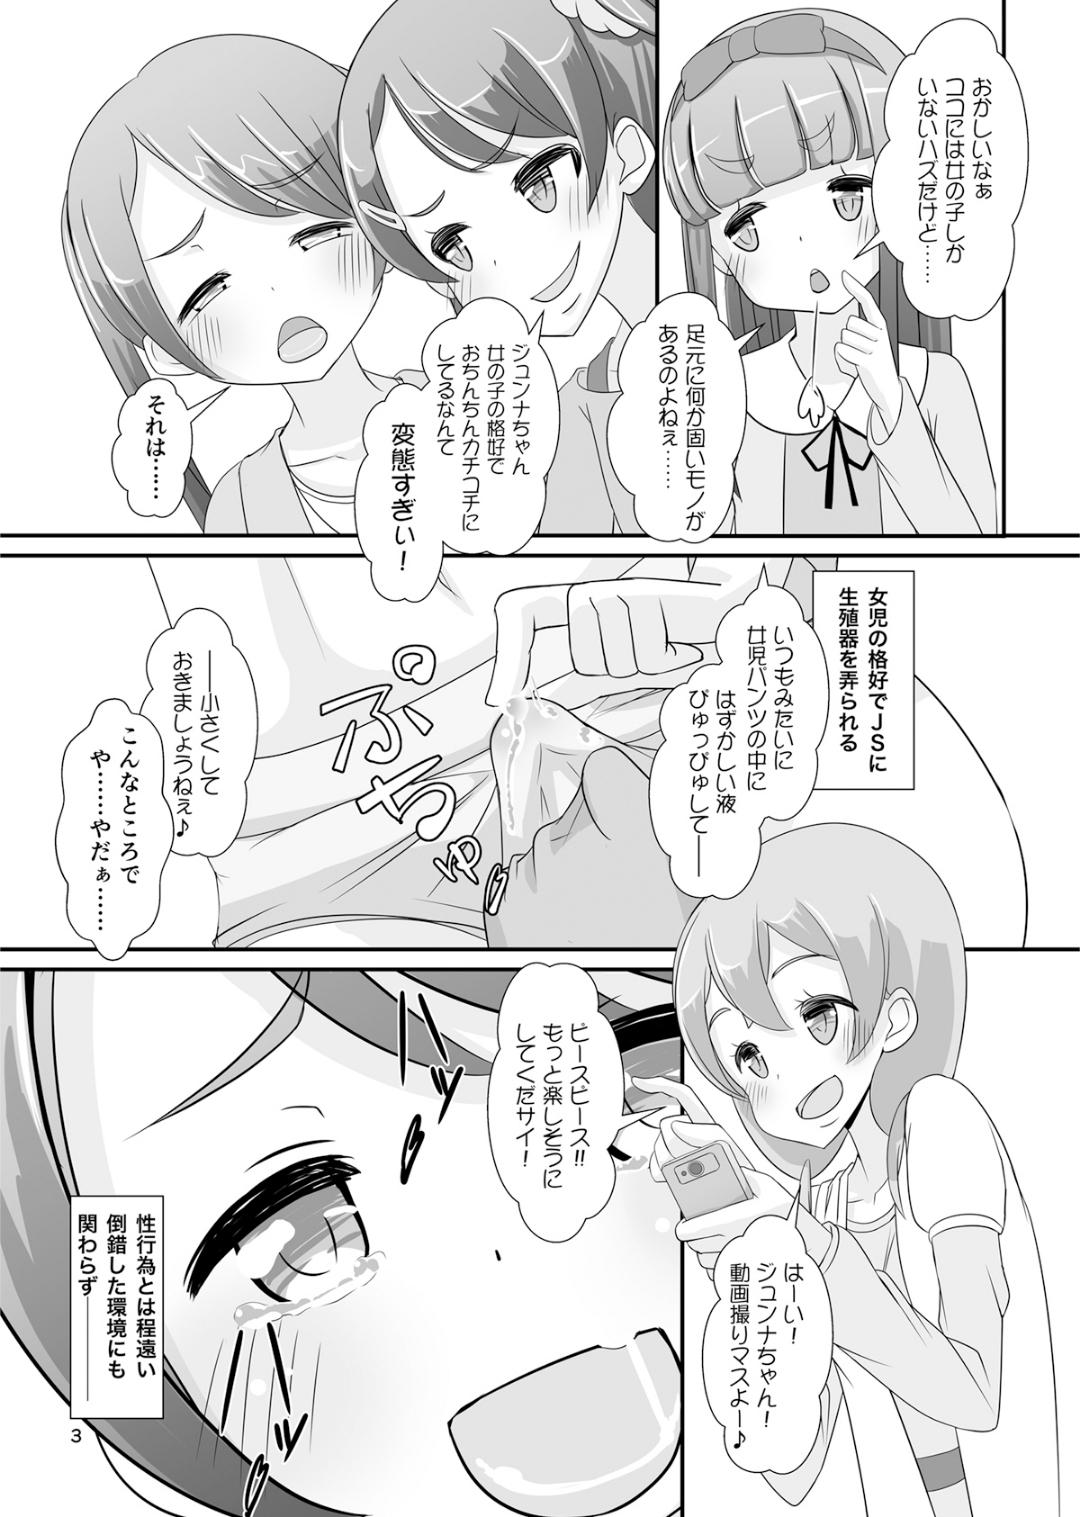 Paja Sensei! Girls fes de Jojisou sitemite! Screaming - Page 4